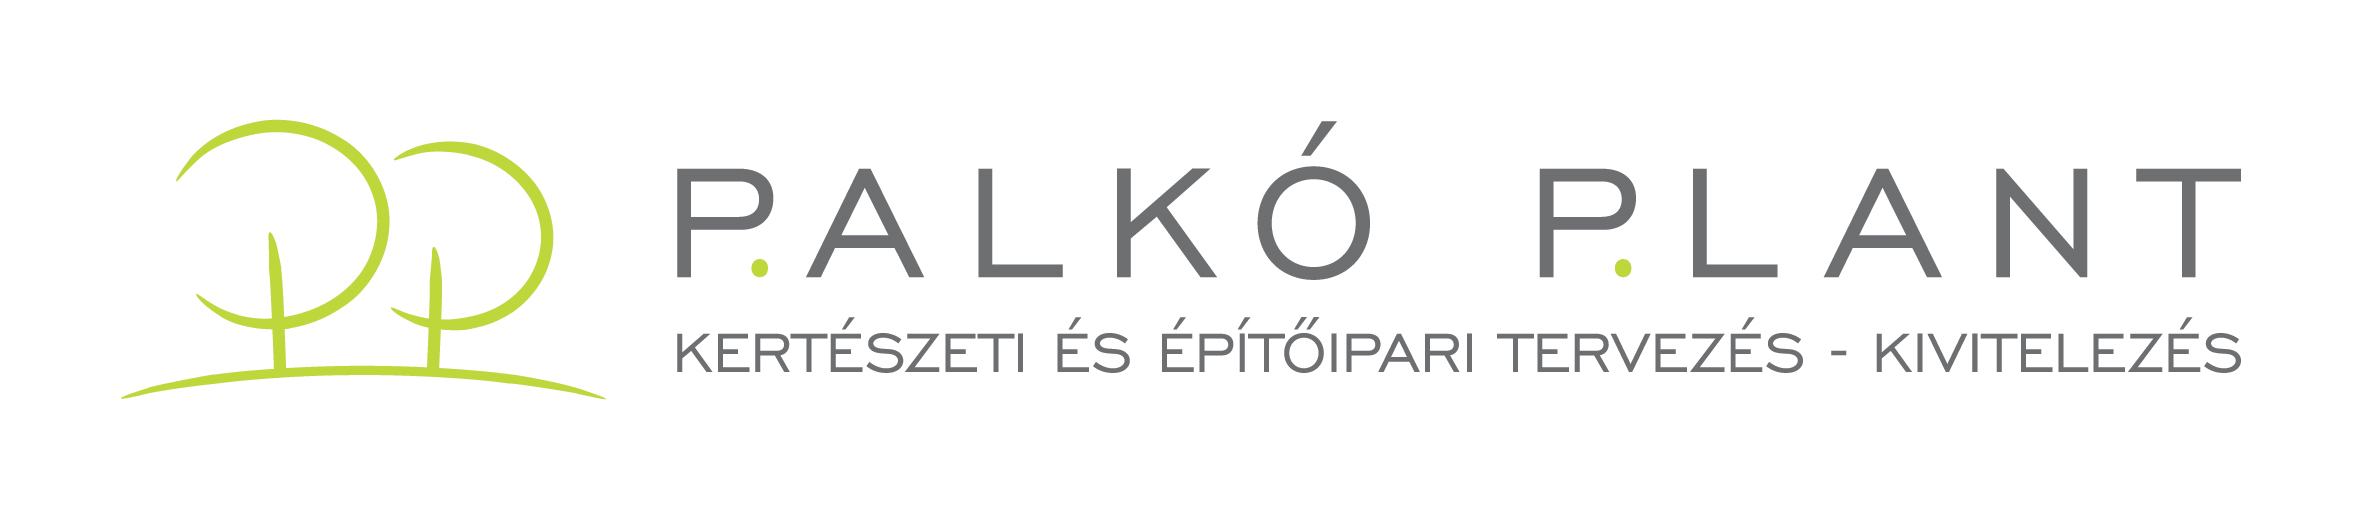 Palkó Plant Kft. Kertészeti és Építőipari tervezés-kivitelezés